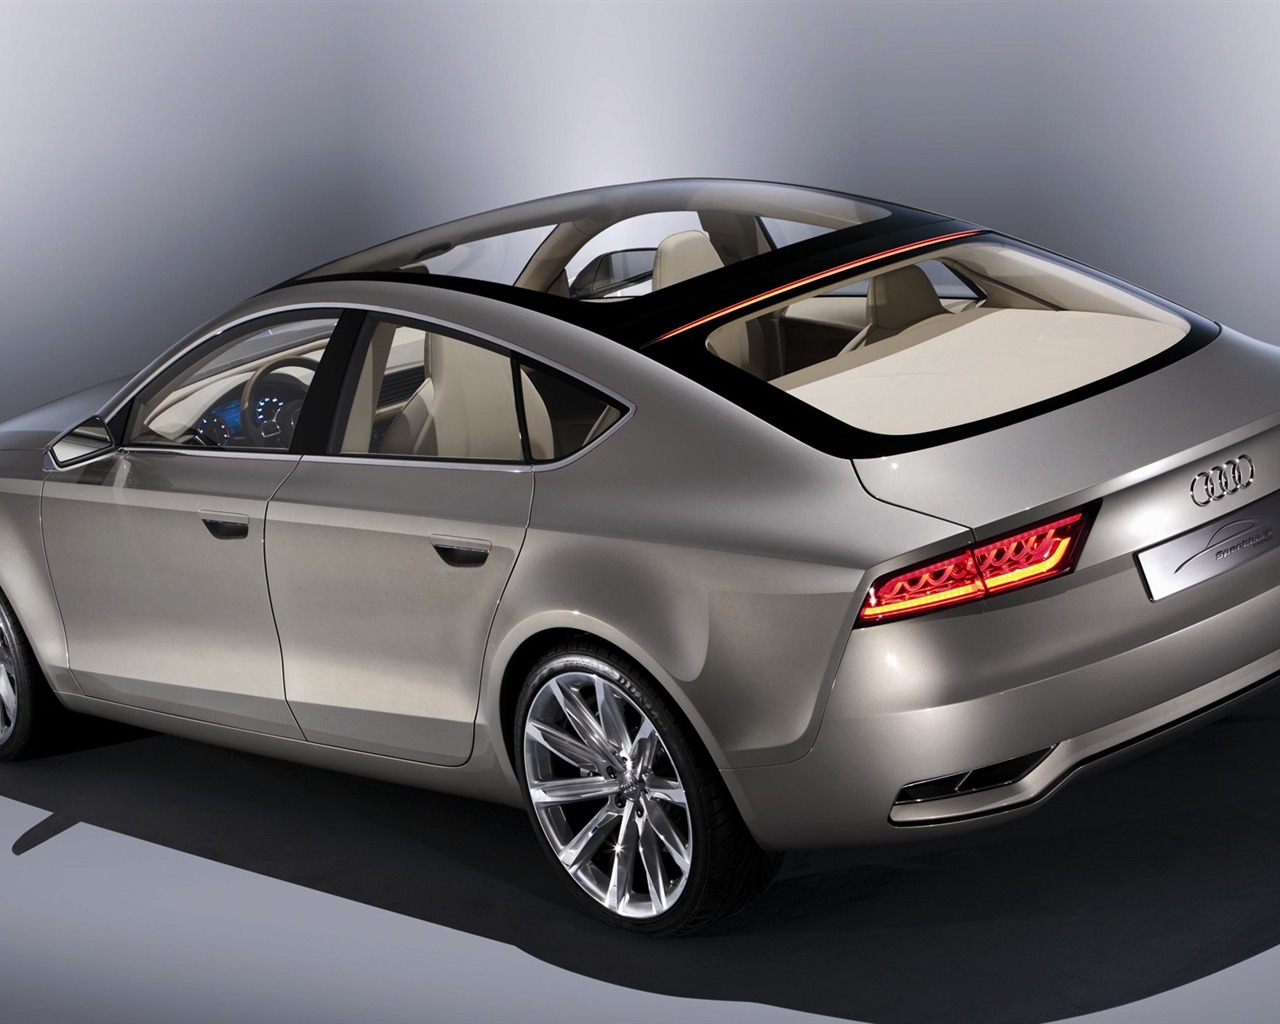 Audi Concept Car Wallpaper (2) #14 - 1280x1024